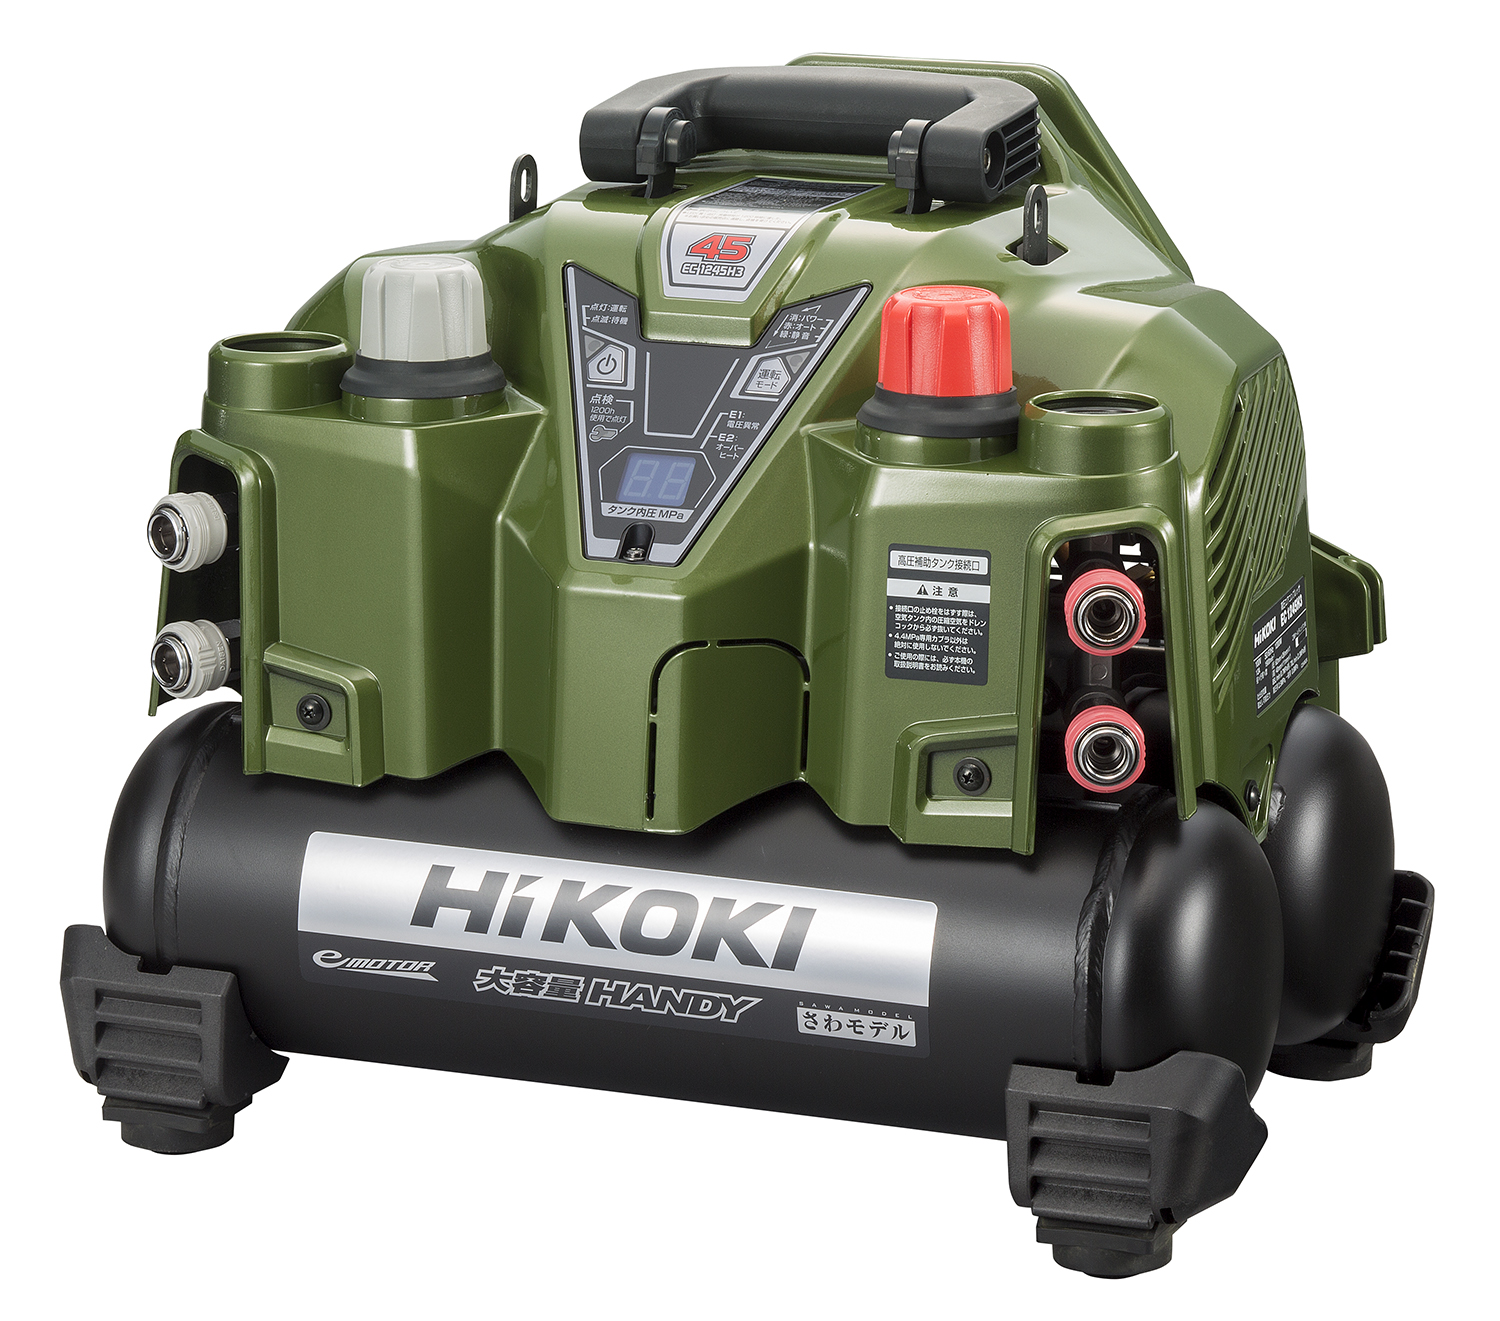 電動工具ブランド「HiKOKI(ハイコーキ)」釘打機用高圧エアコンプレッサの限定色モデルを数量限定で発売 今秋に登場した人気の新色を採用